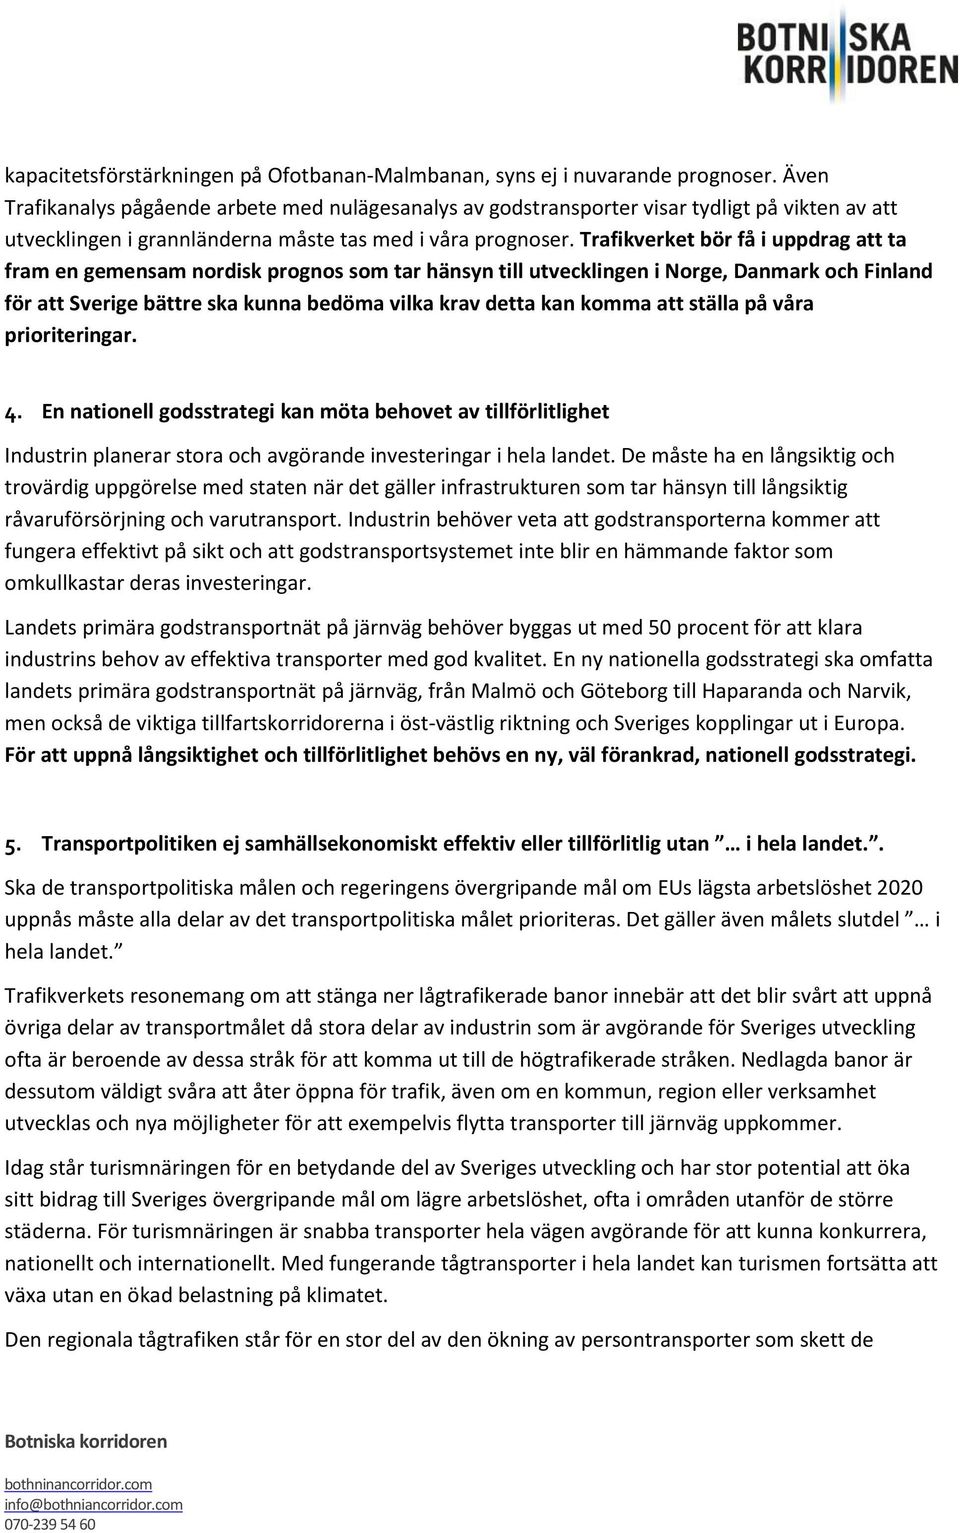 Trafikverket bör få i uppdrag att ta fram en gemensam nordisk prognos som tar hänsyn till utvecklingen i Norge, Danmark och Finland för att Sverige bättre ska kunna bedöma vilka krav detta kan komma